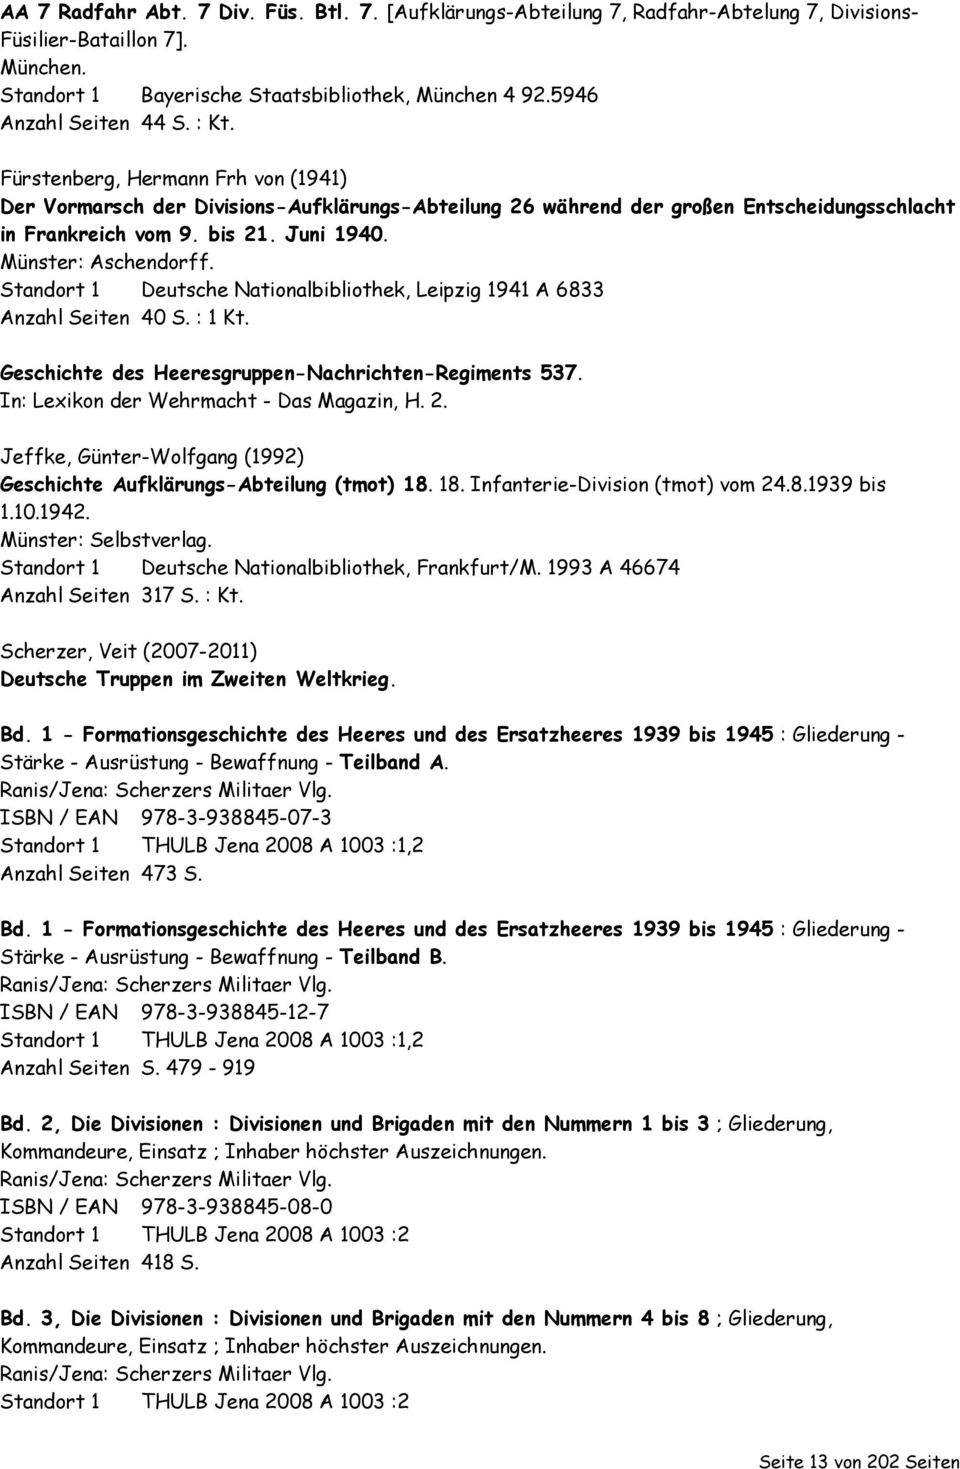 Münster: Aschendorff. Standort 1 Deutsche Nationalbibliothek, Leipzig 1941 A 6833 Anzahl Seiten 40 S. : 1 Kt. Geschichte des Heeresgruppen-Nachrichten-Regiments 537.